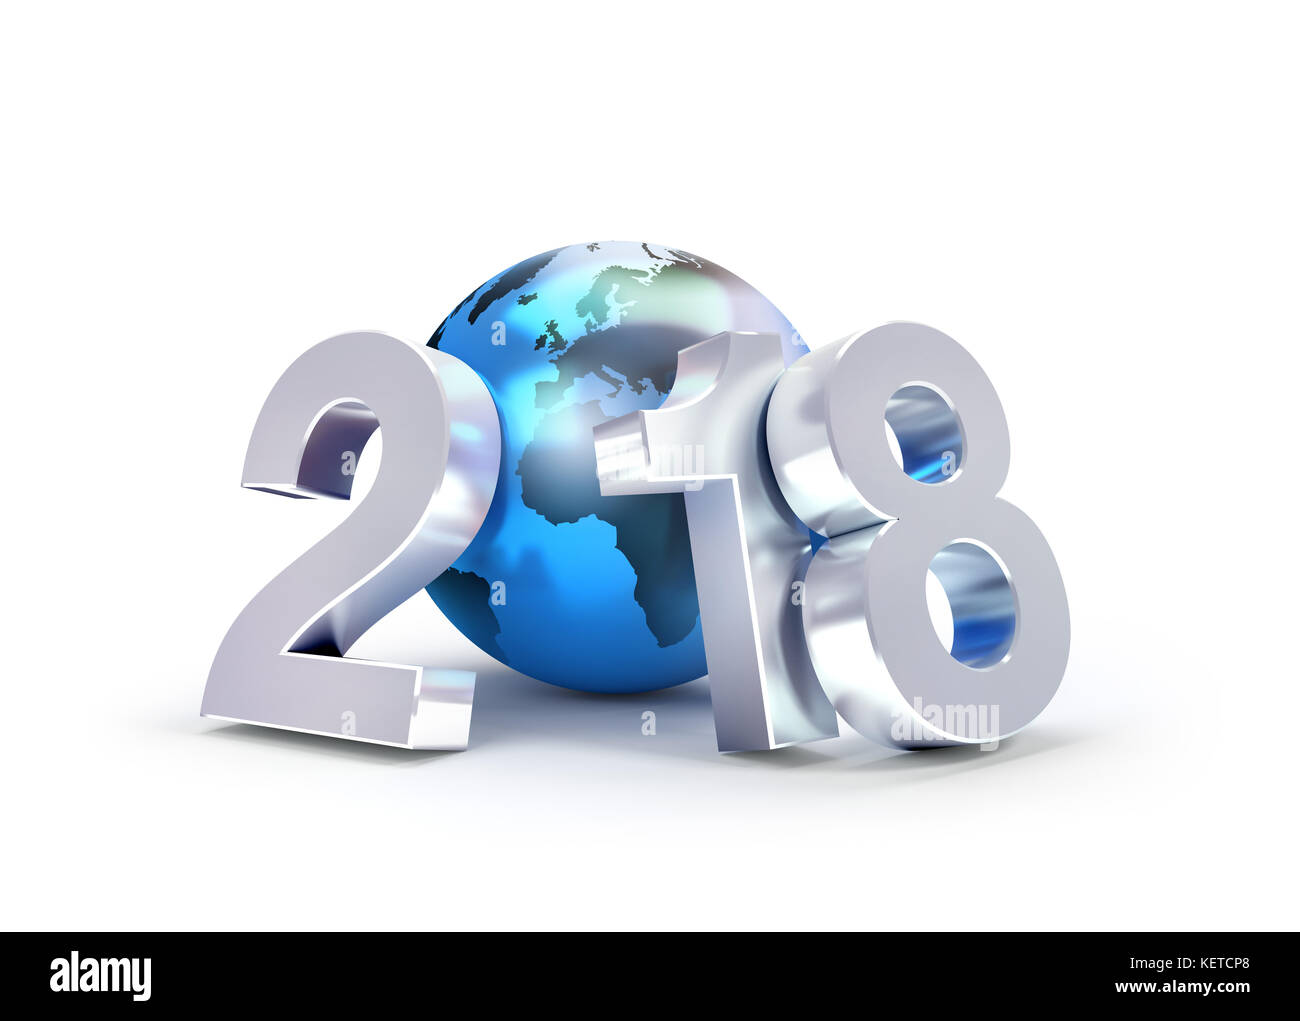 2018 Type nouvel an composé d'une planète terre bleue, isolé sur blanc - illustration 3D. Banque D'Images